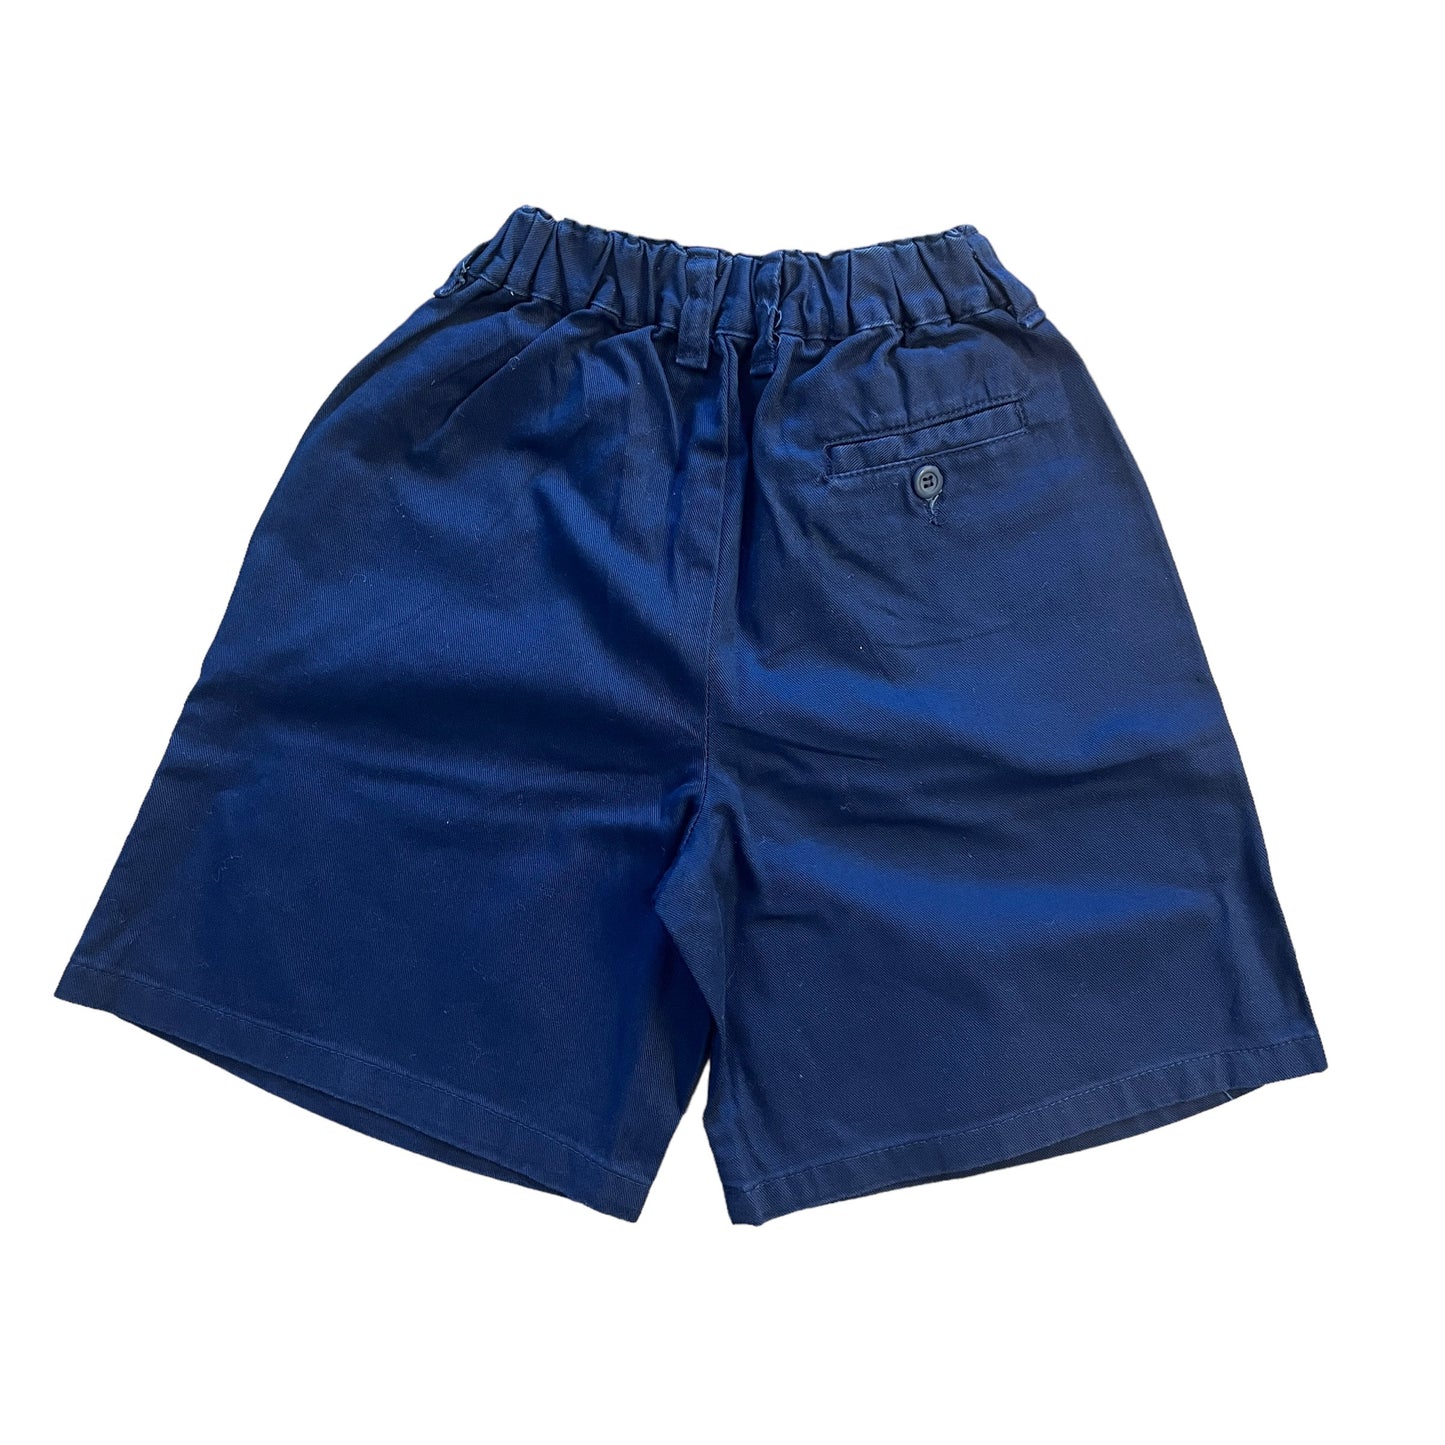 1980s Navy Shorts 5-6Y